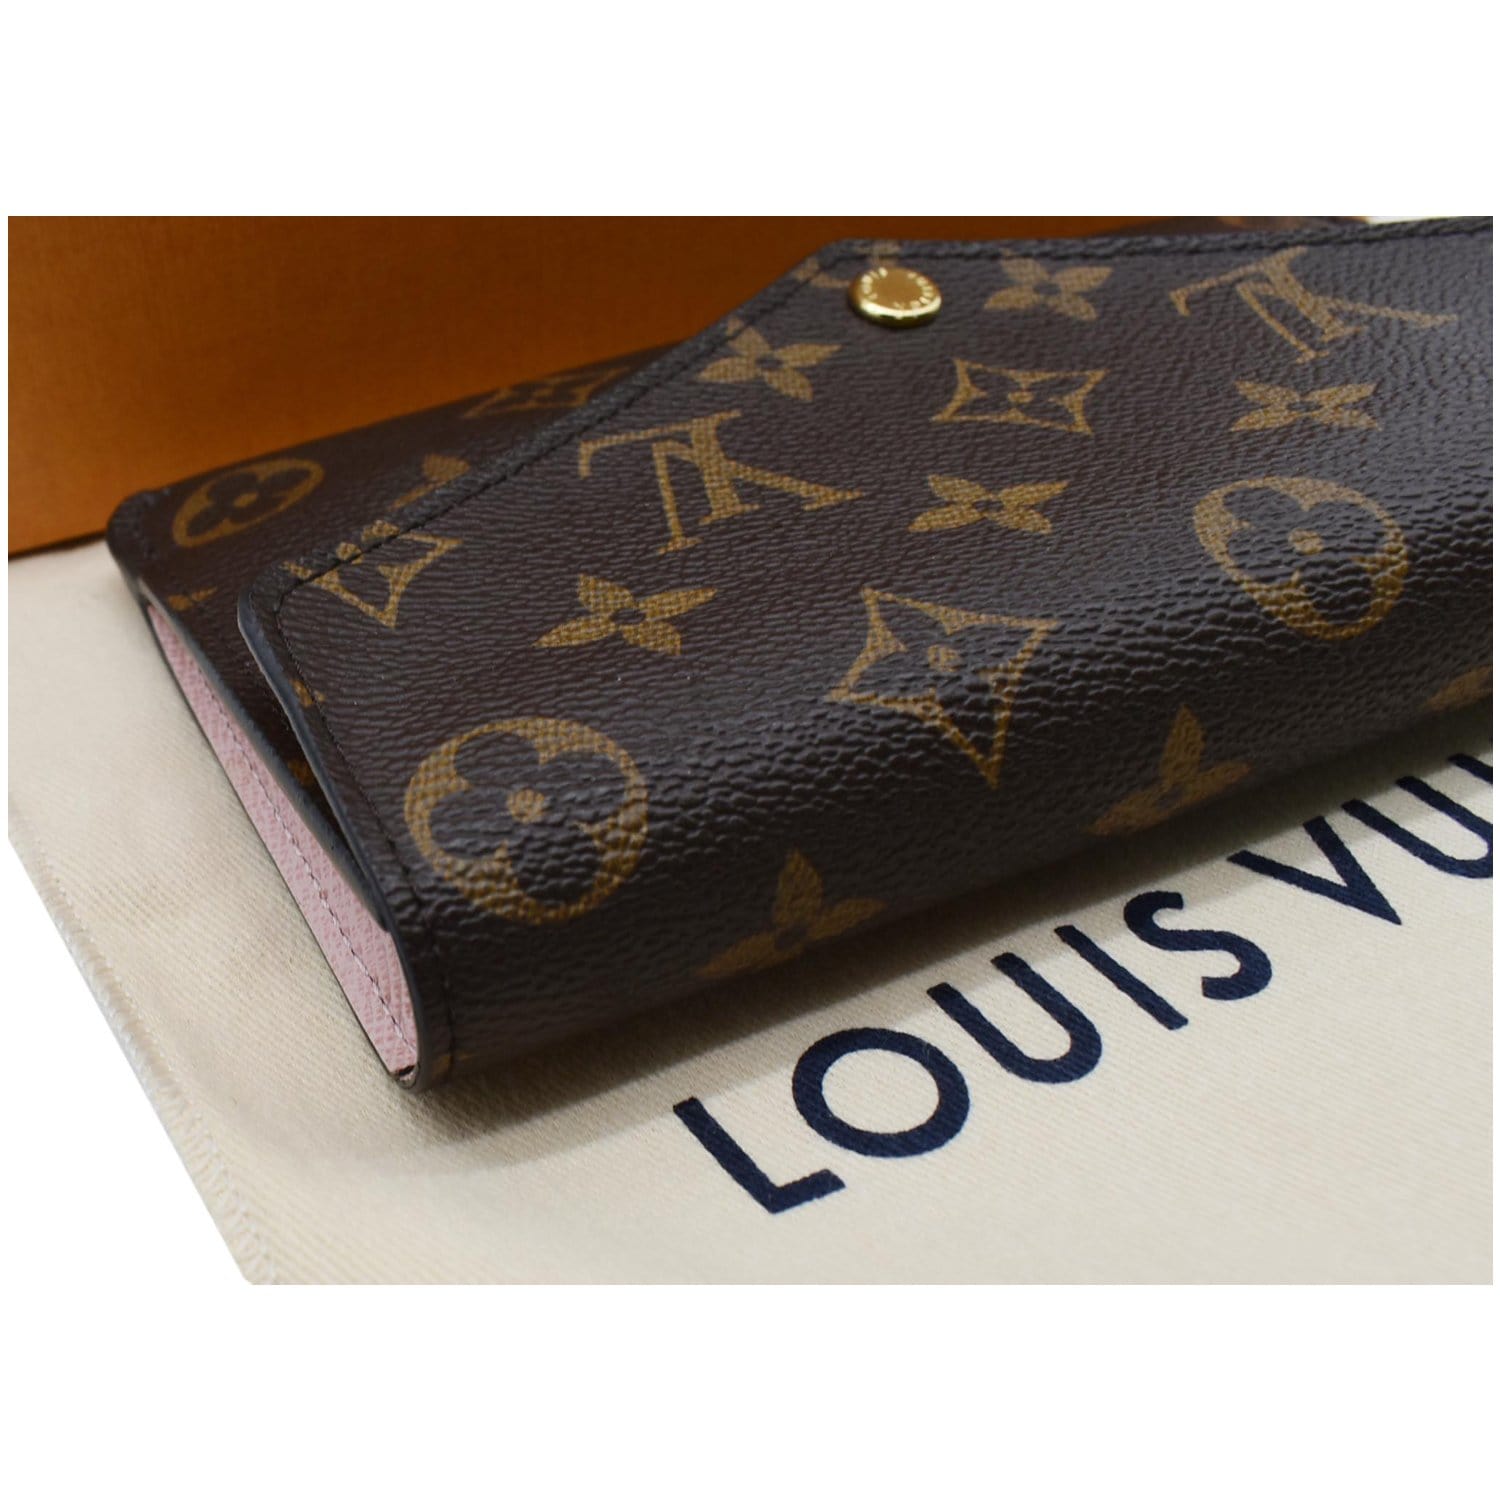 Authentic Louis Vuitton monogram Jeanne wallet